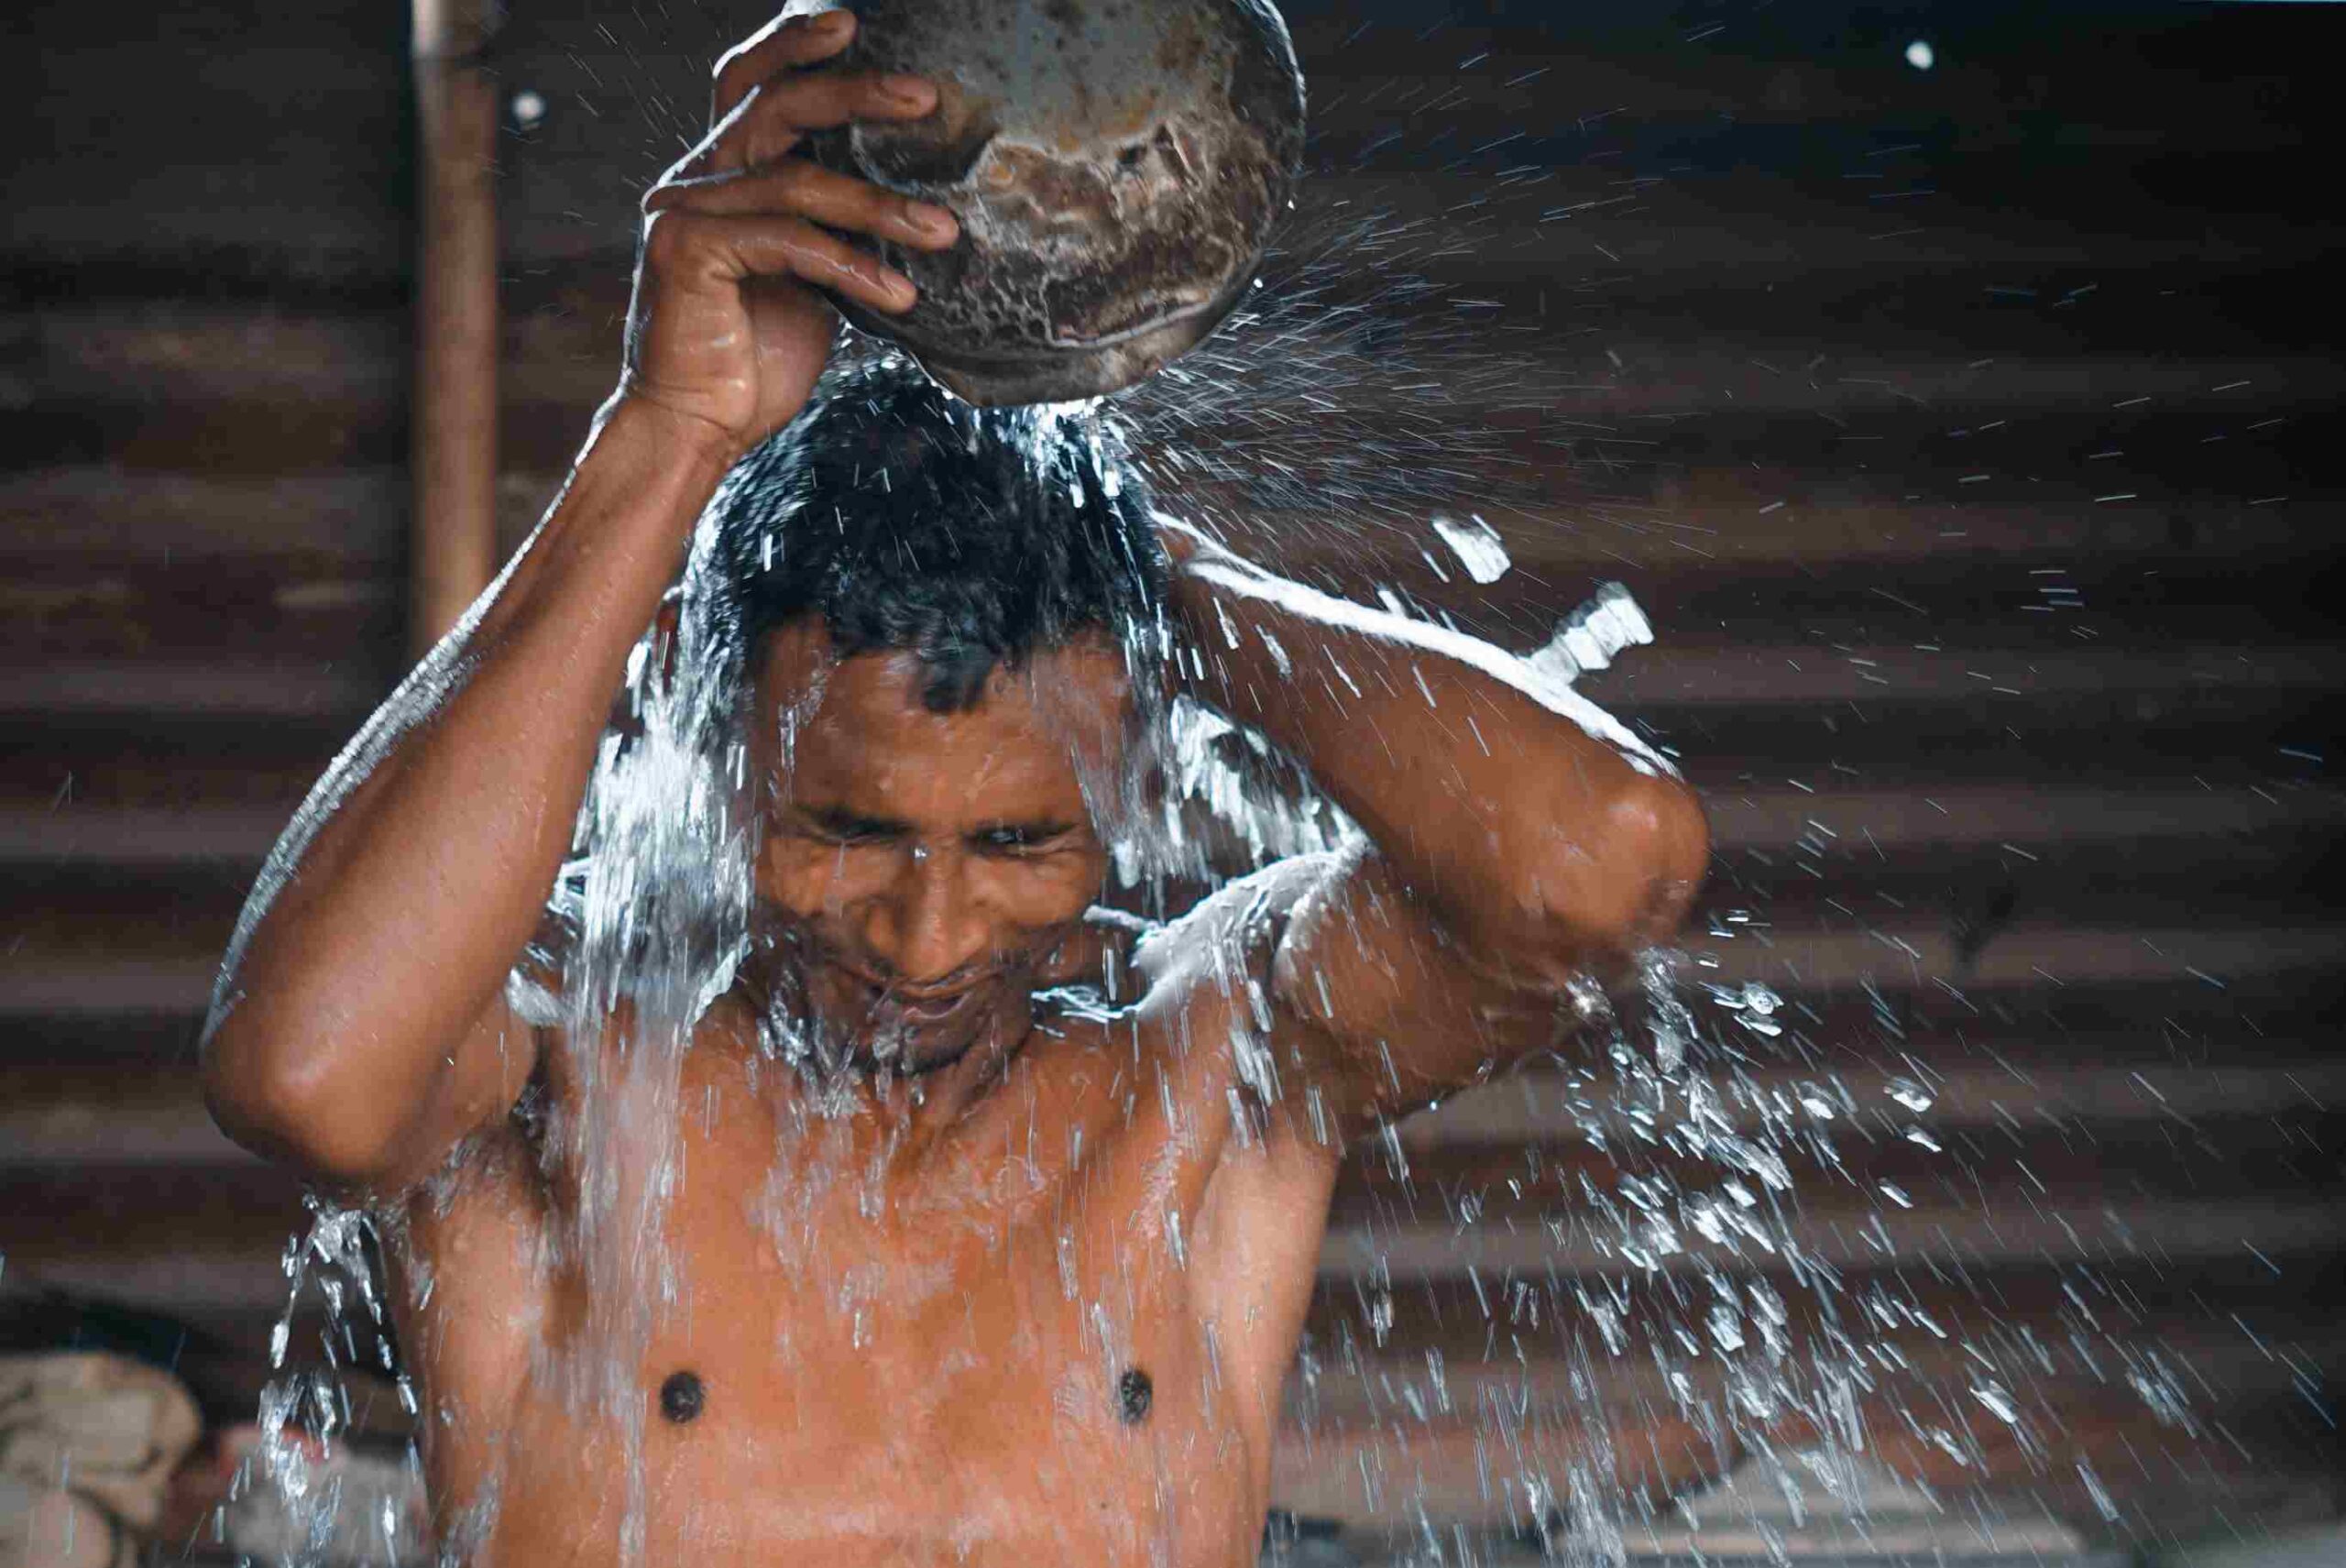 Mann gießt Wasser über Kopf